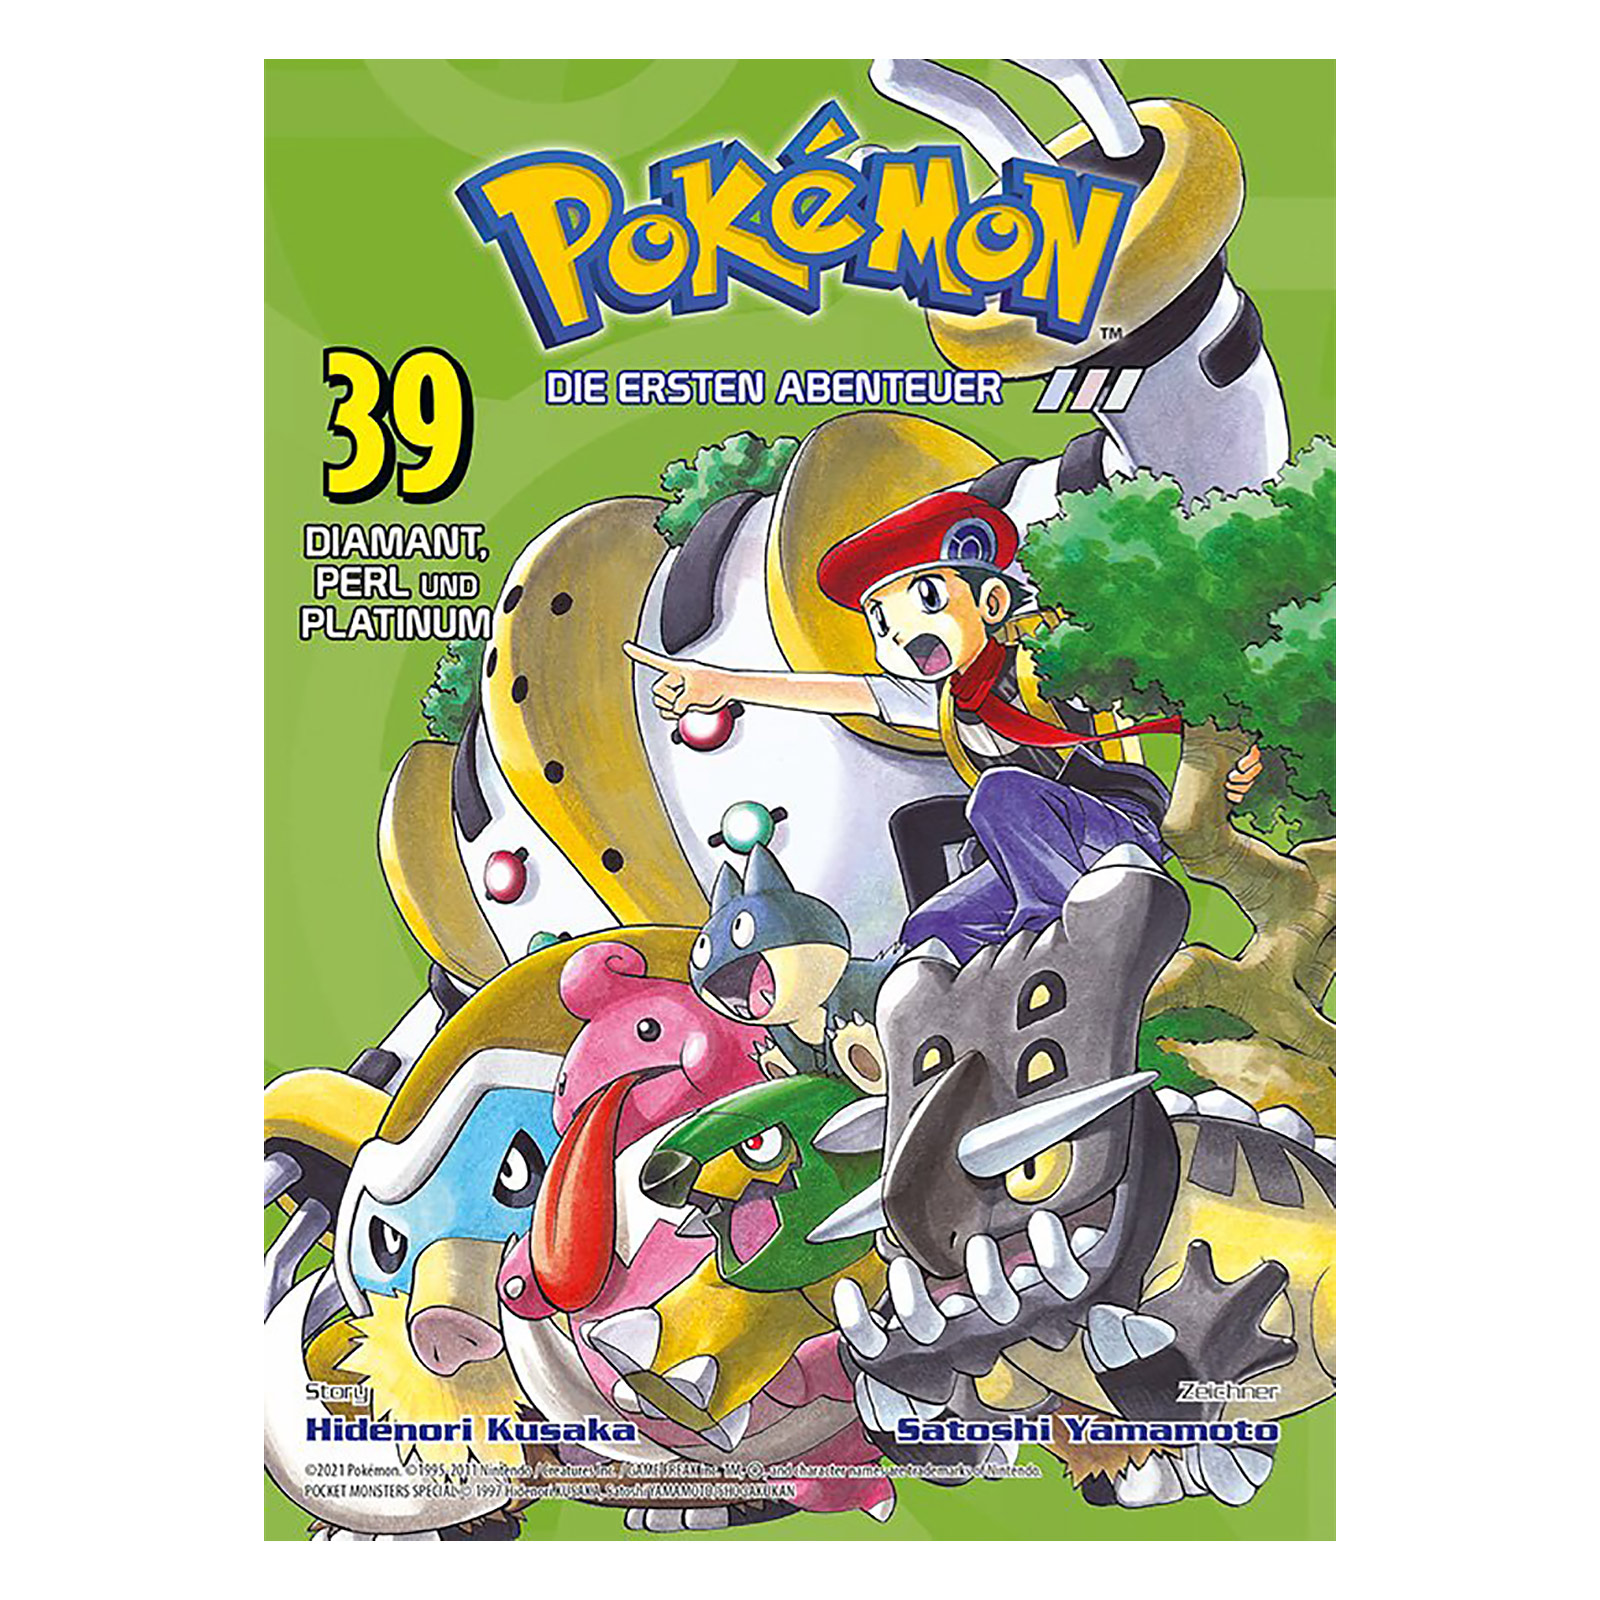 Pokémon - Die ersten Abenteuer Band 39 Taschenbuch